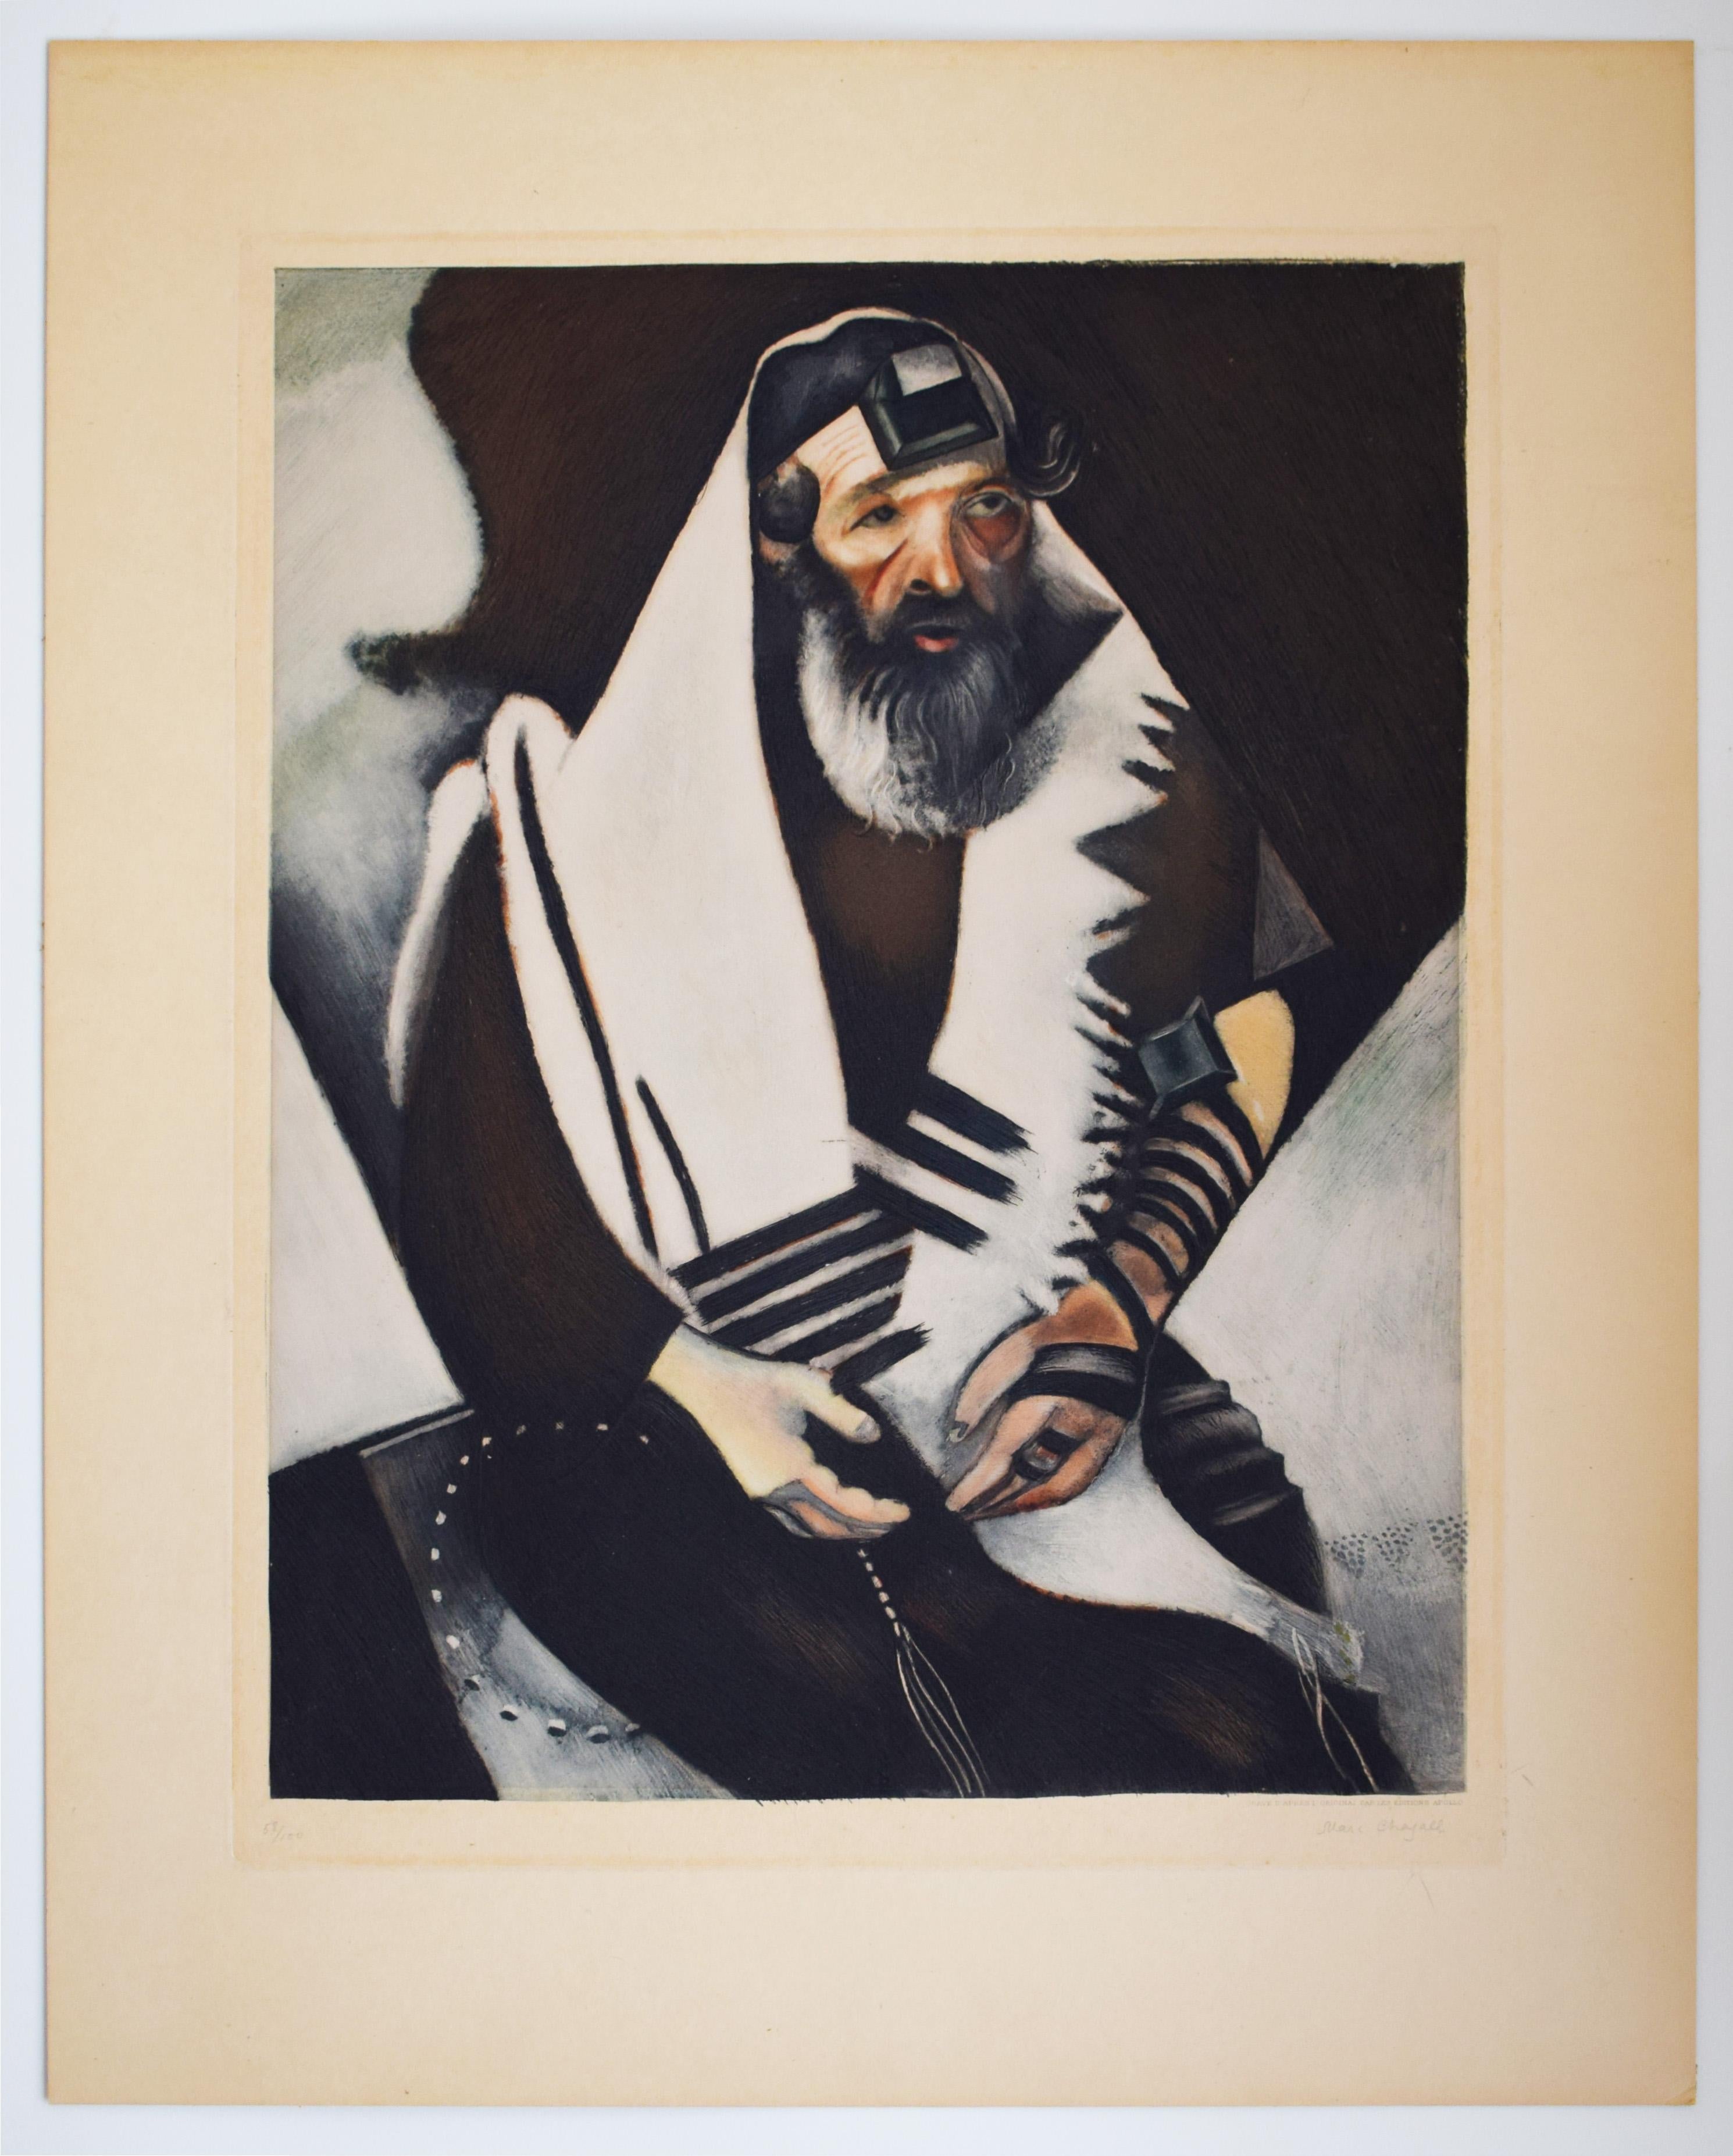 Der Rabbiner von Witebsk (Das Gebet des Juden) – Religiöses Gebet der Judaica-Kandidatin – Print von (after) Marc Chagall